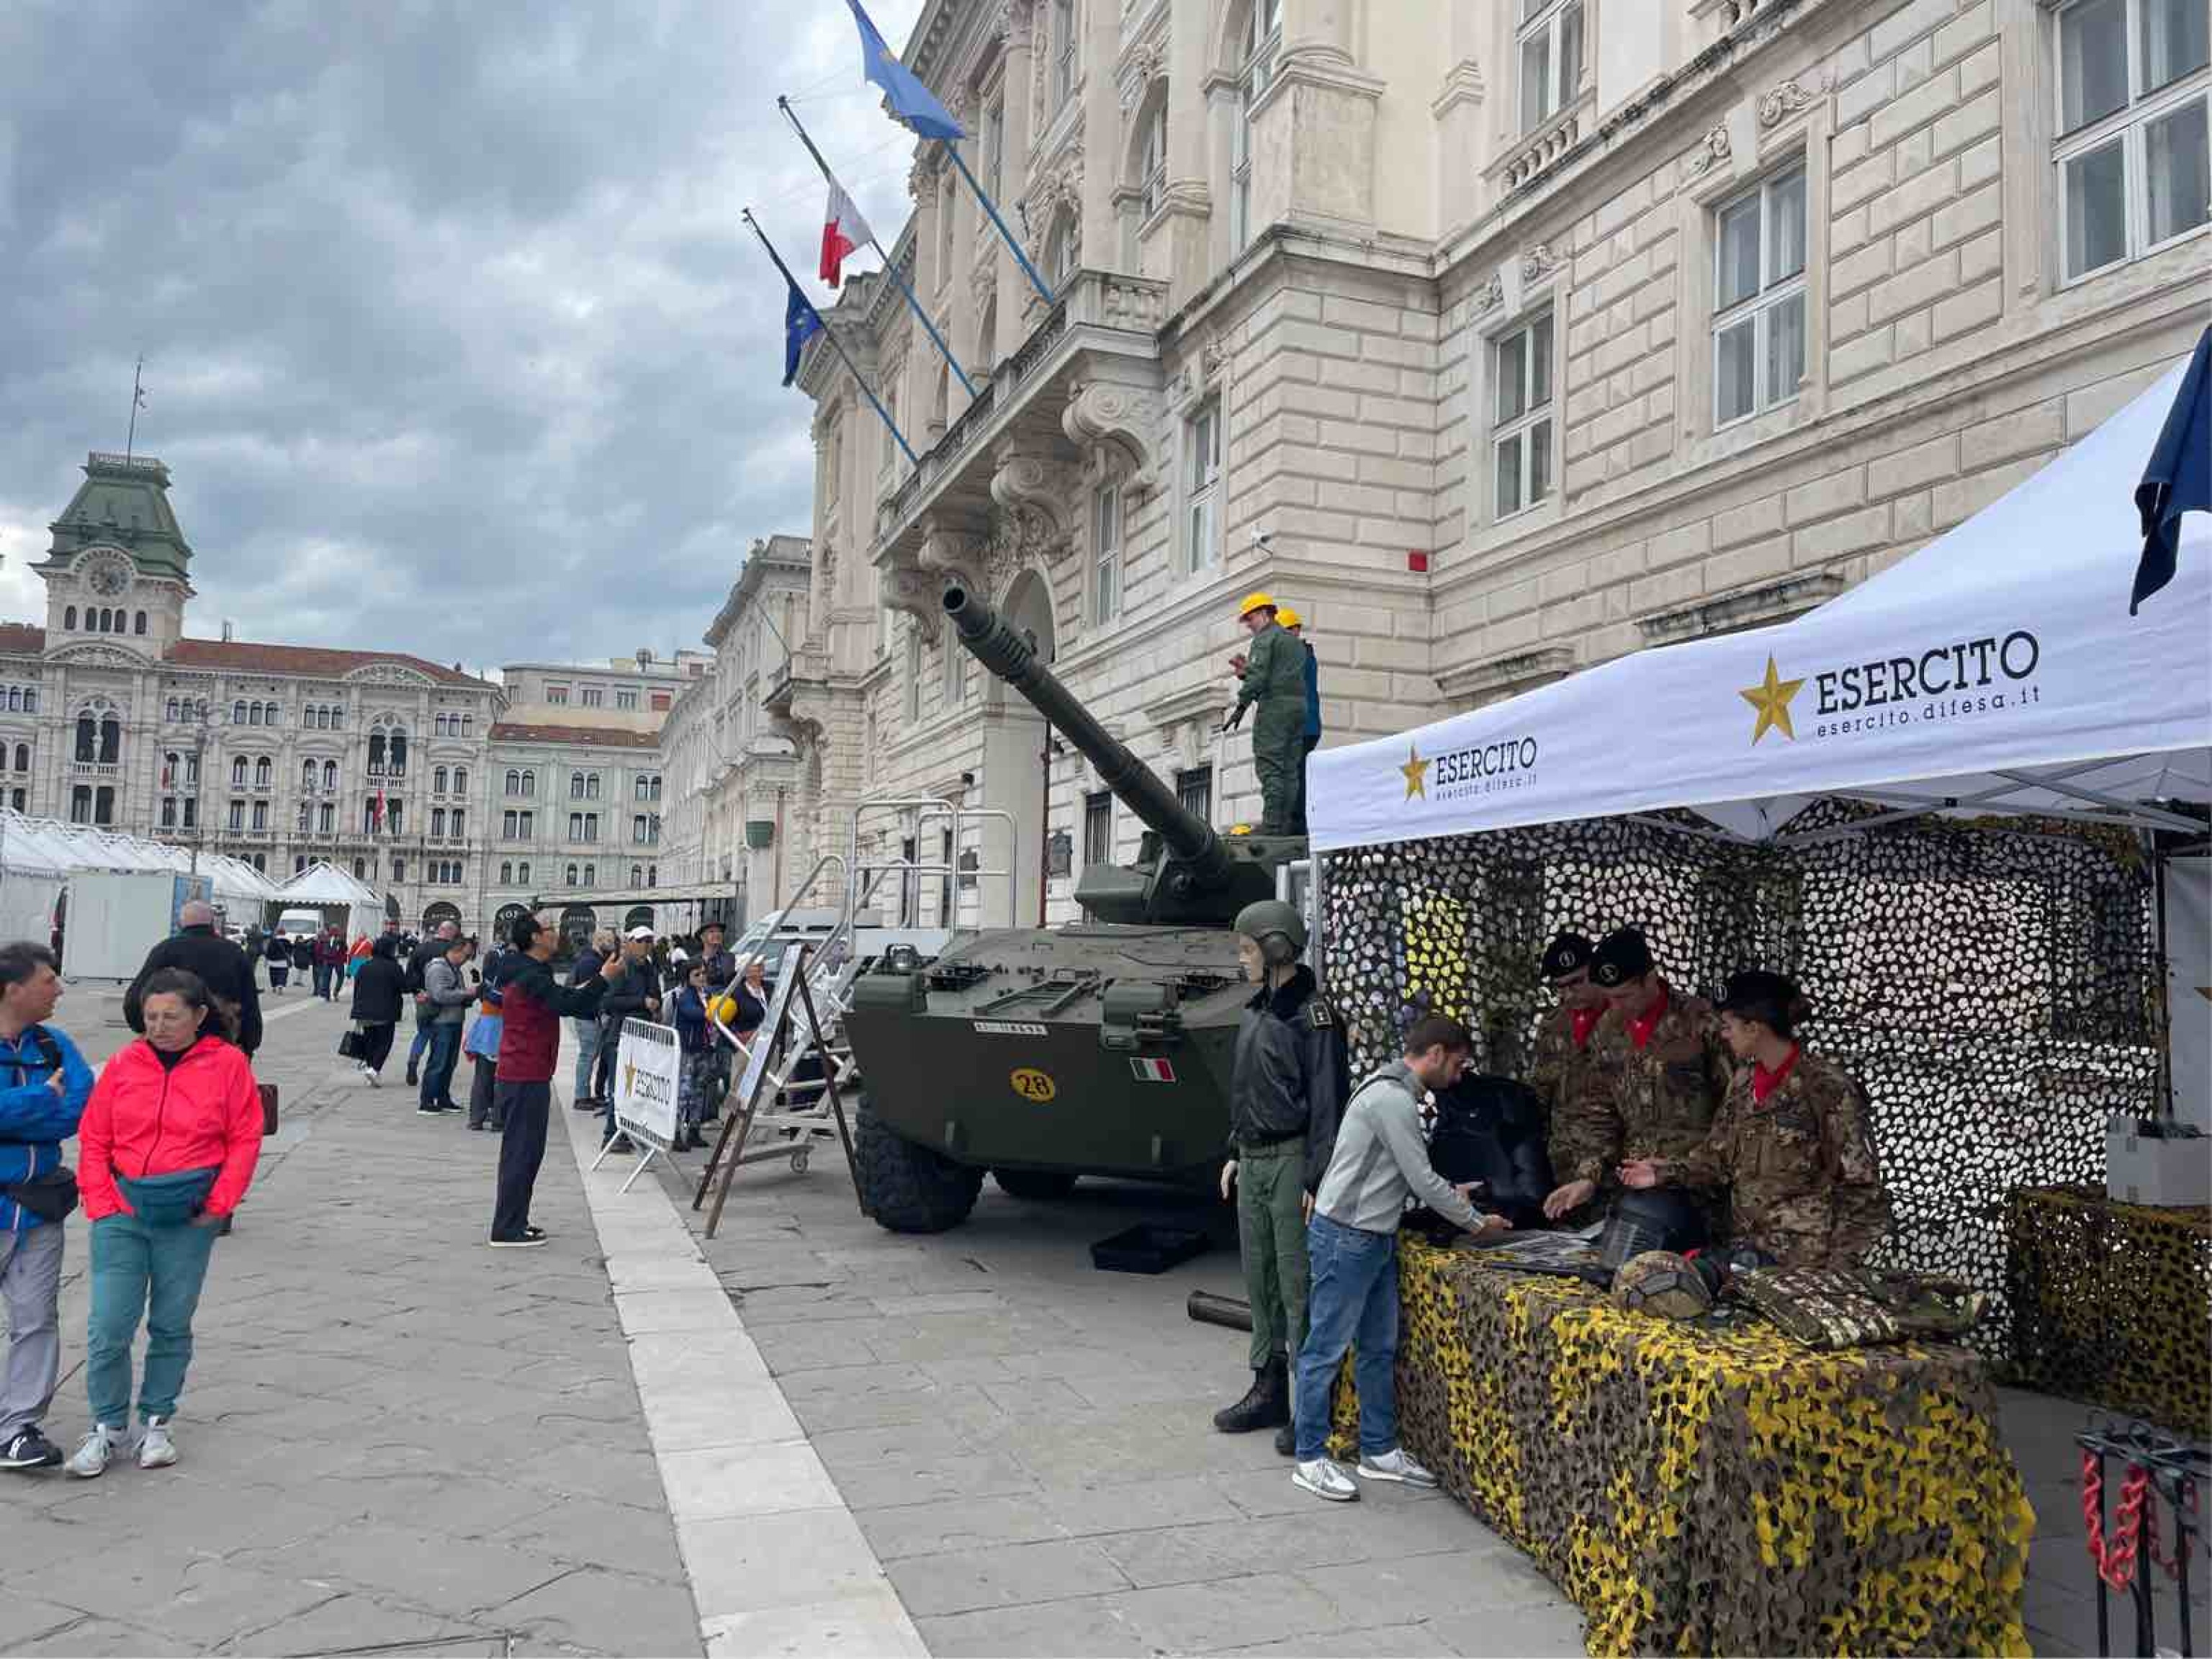 l'esercito incontra i cittadini in uno stand in piazza a trieste